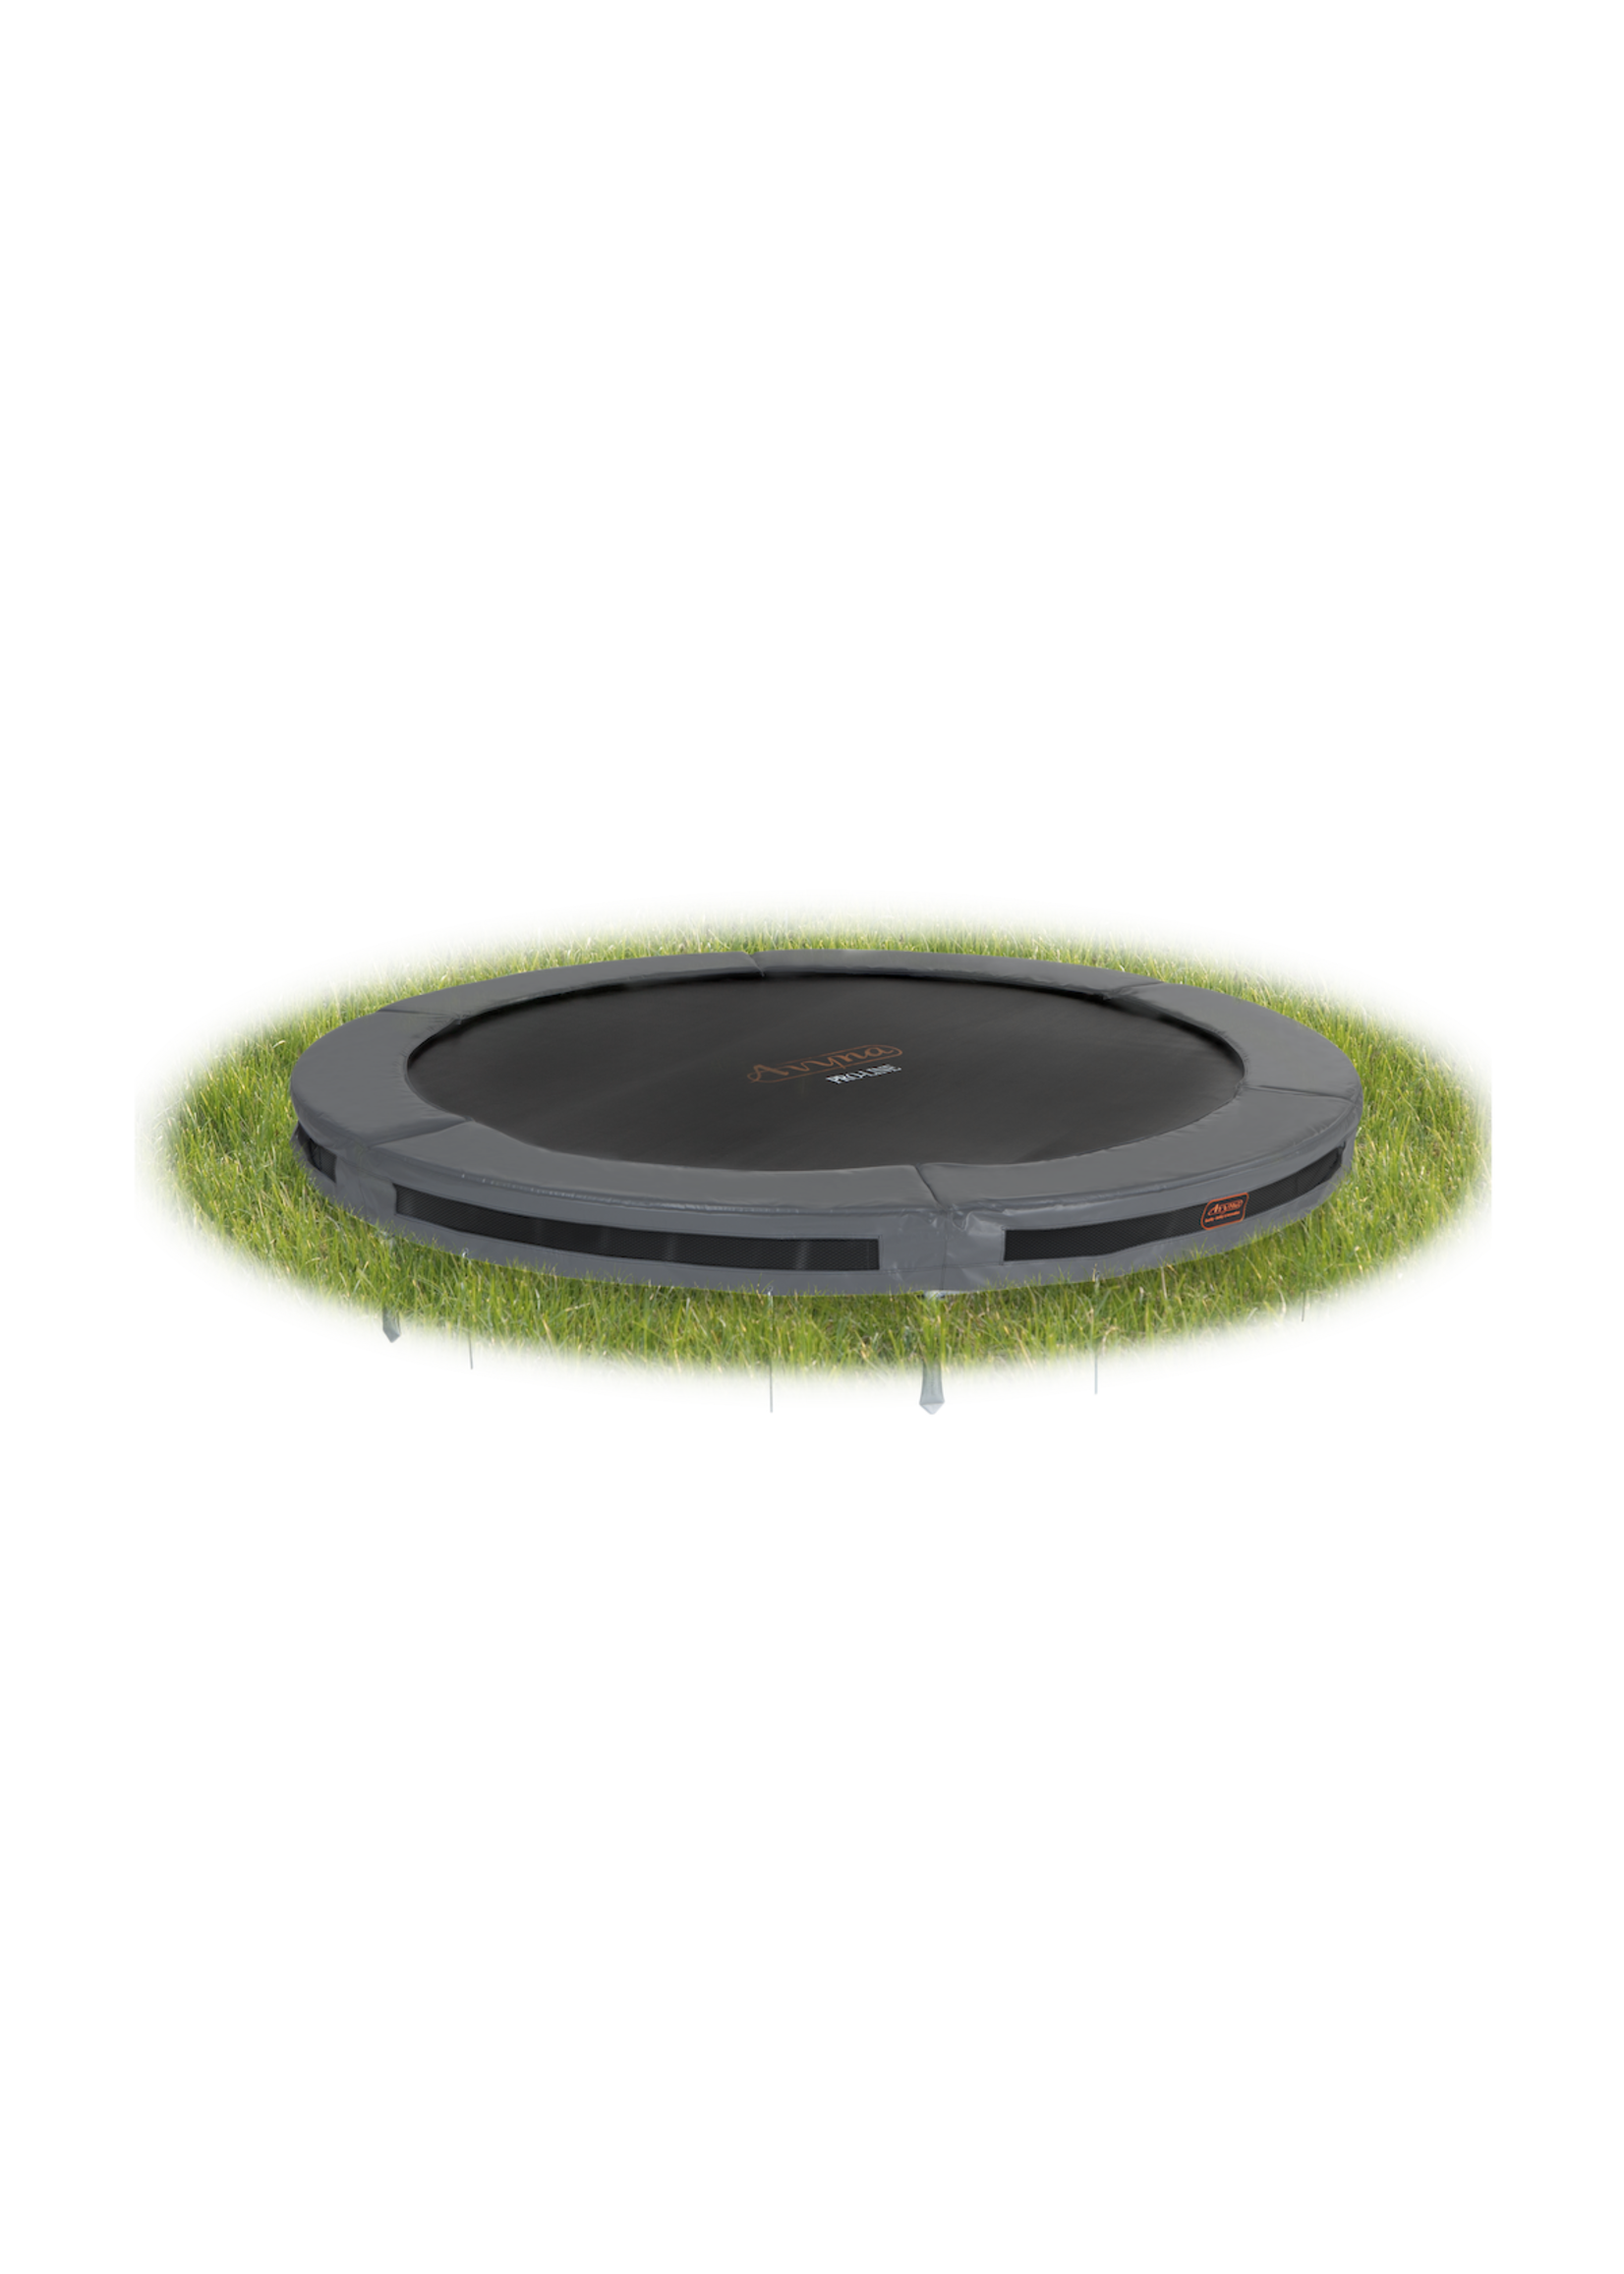 Avyna De ideale ronde trampoline voor in de grond, Inground : de Avyna Pro-Line van ‚àö√≤ 365 cm